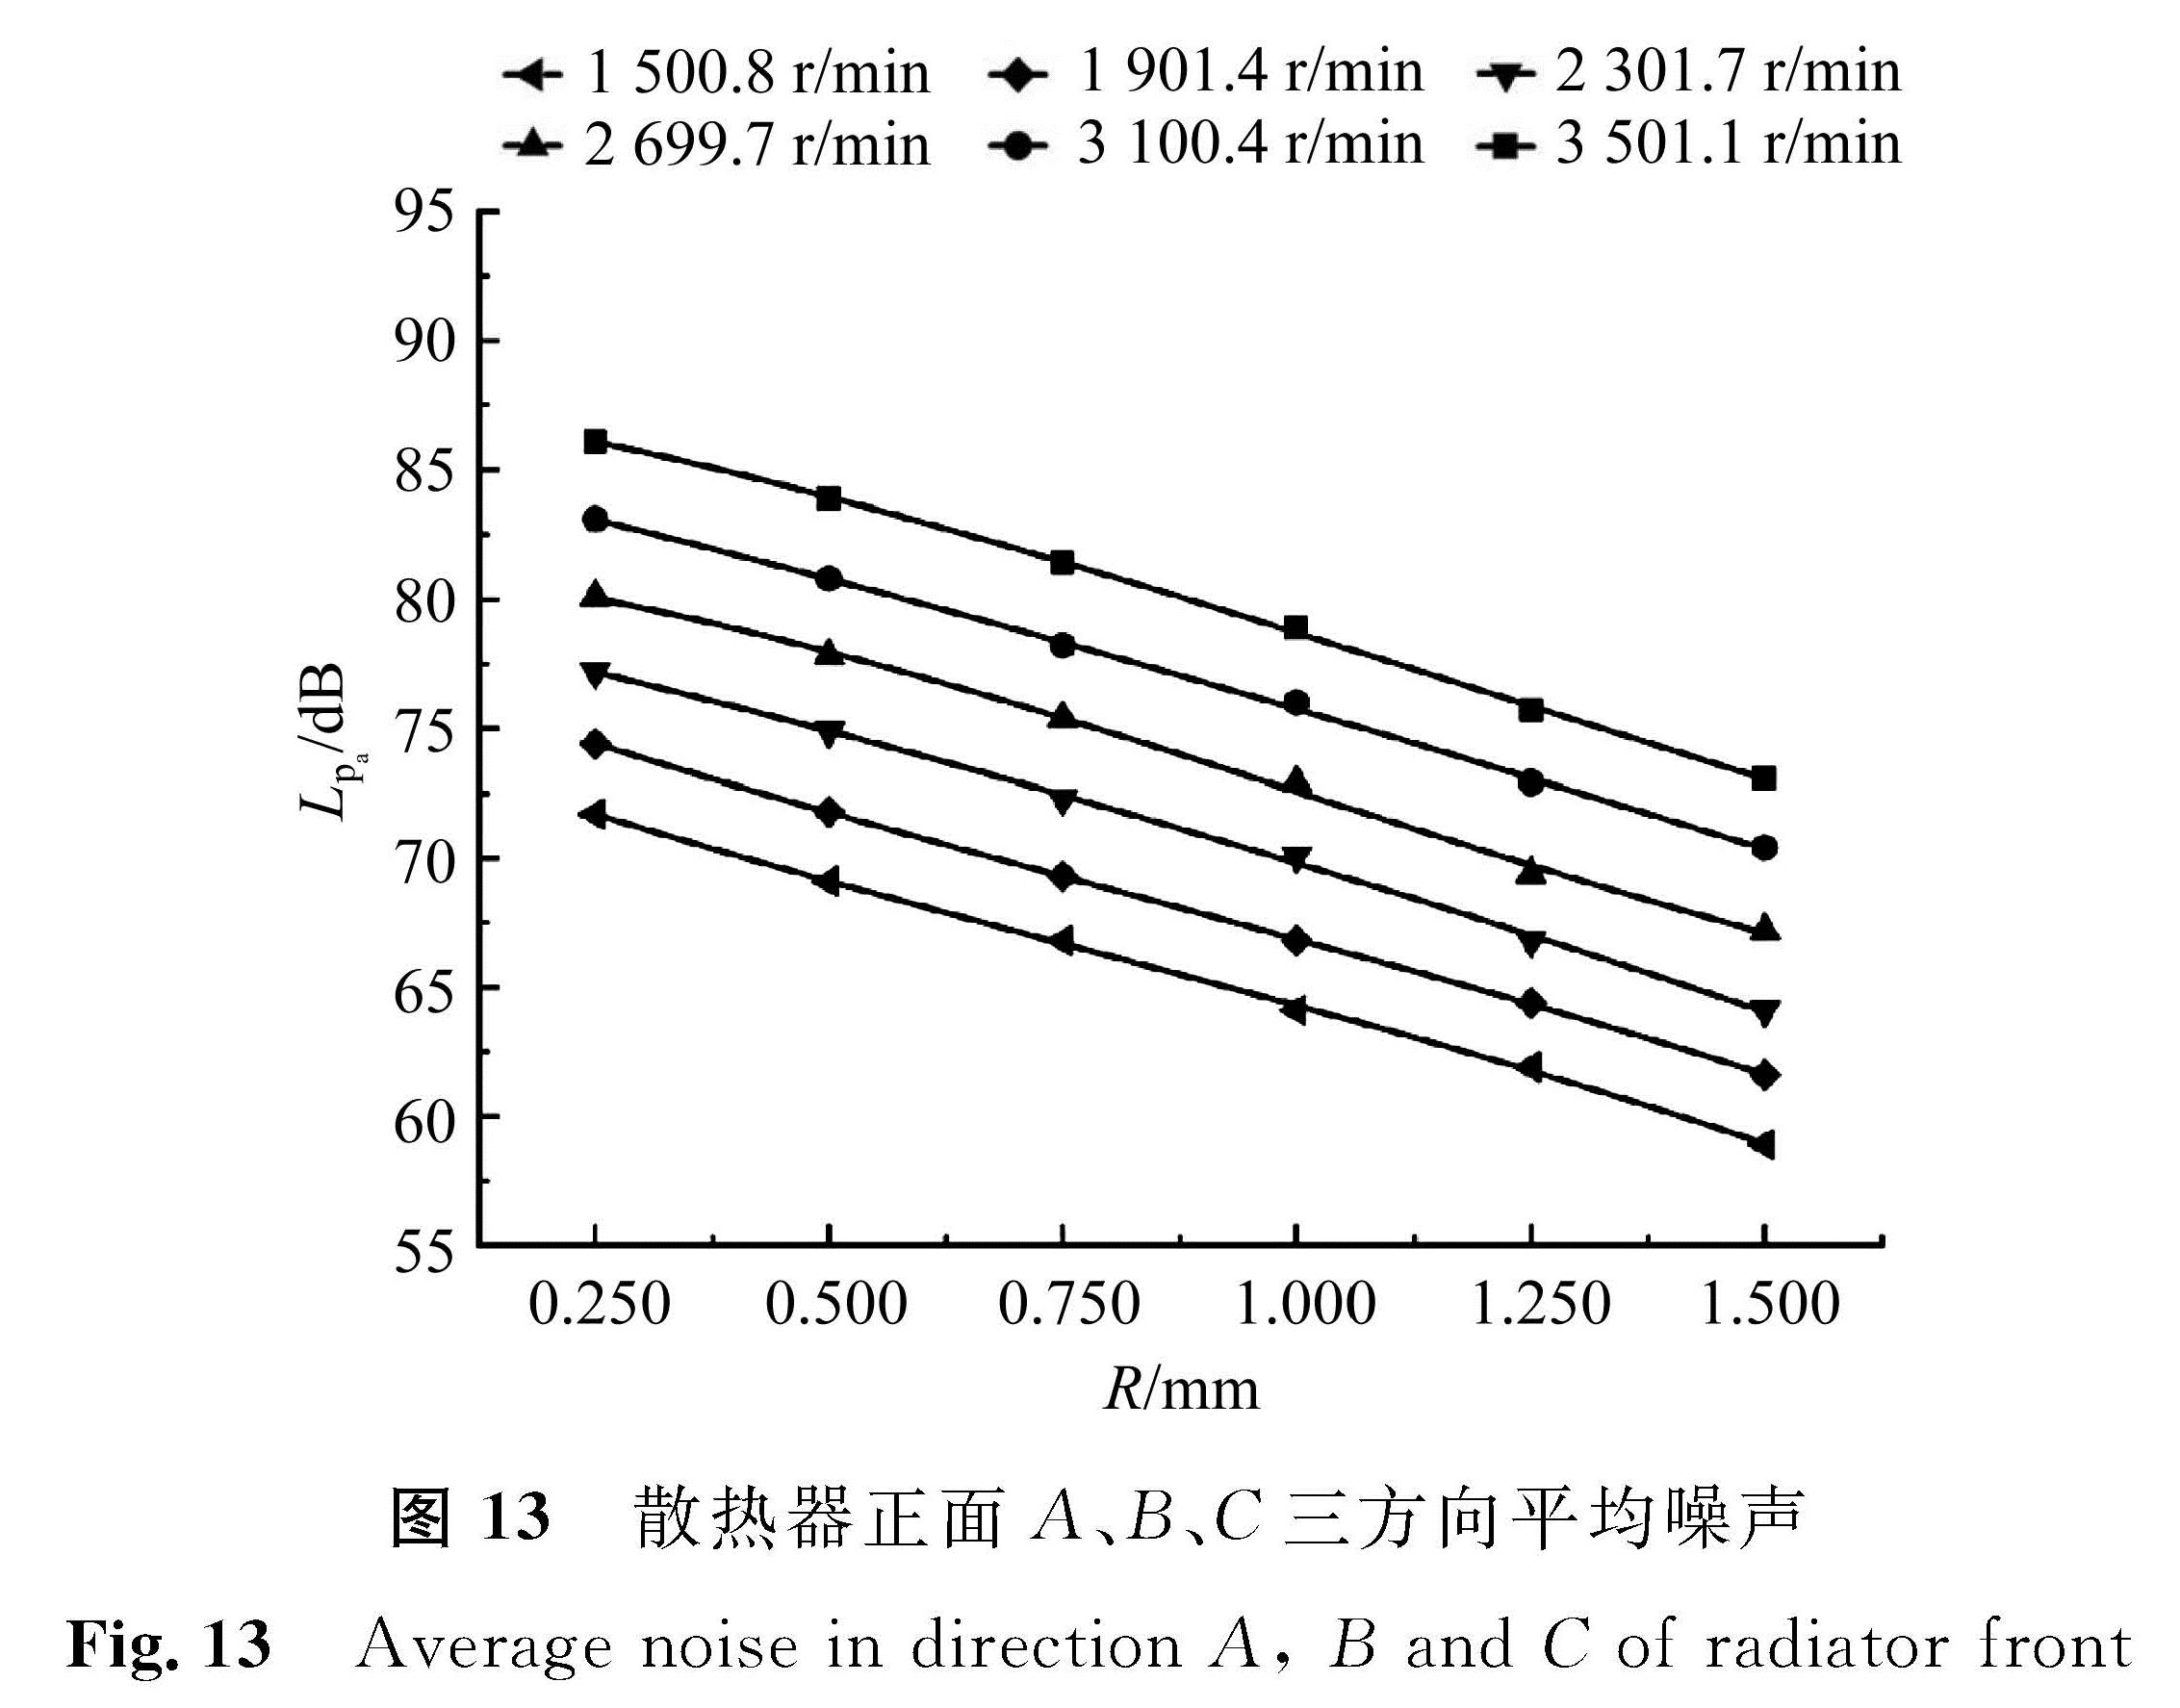 图 13 散热器正面A、B、C三方向平均噪声<br/>Fig.13 Average noise in direction A, B and C of radiator front